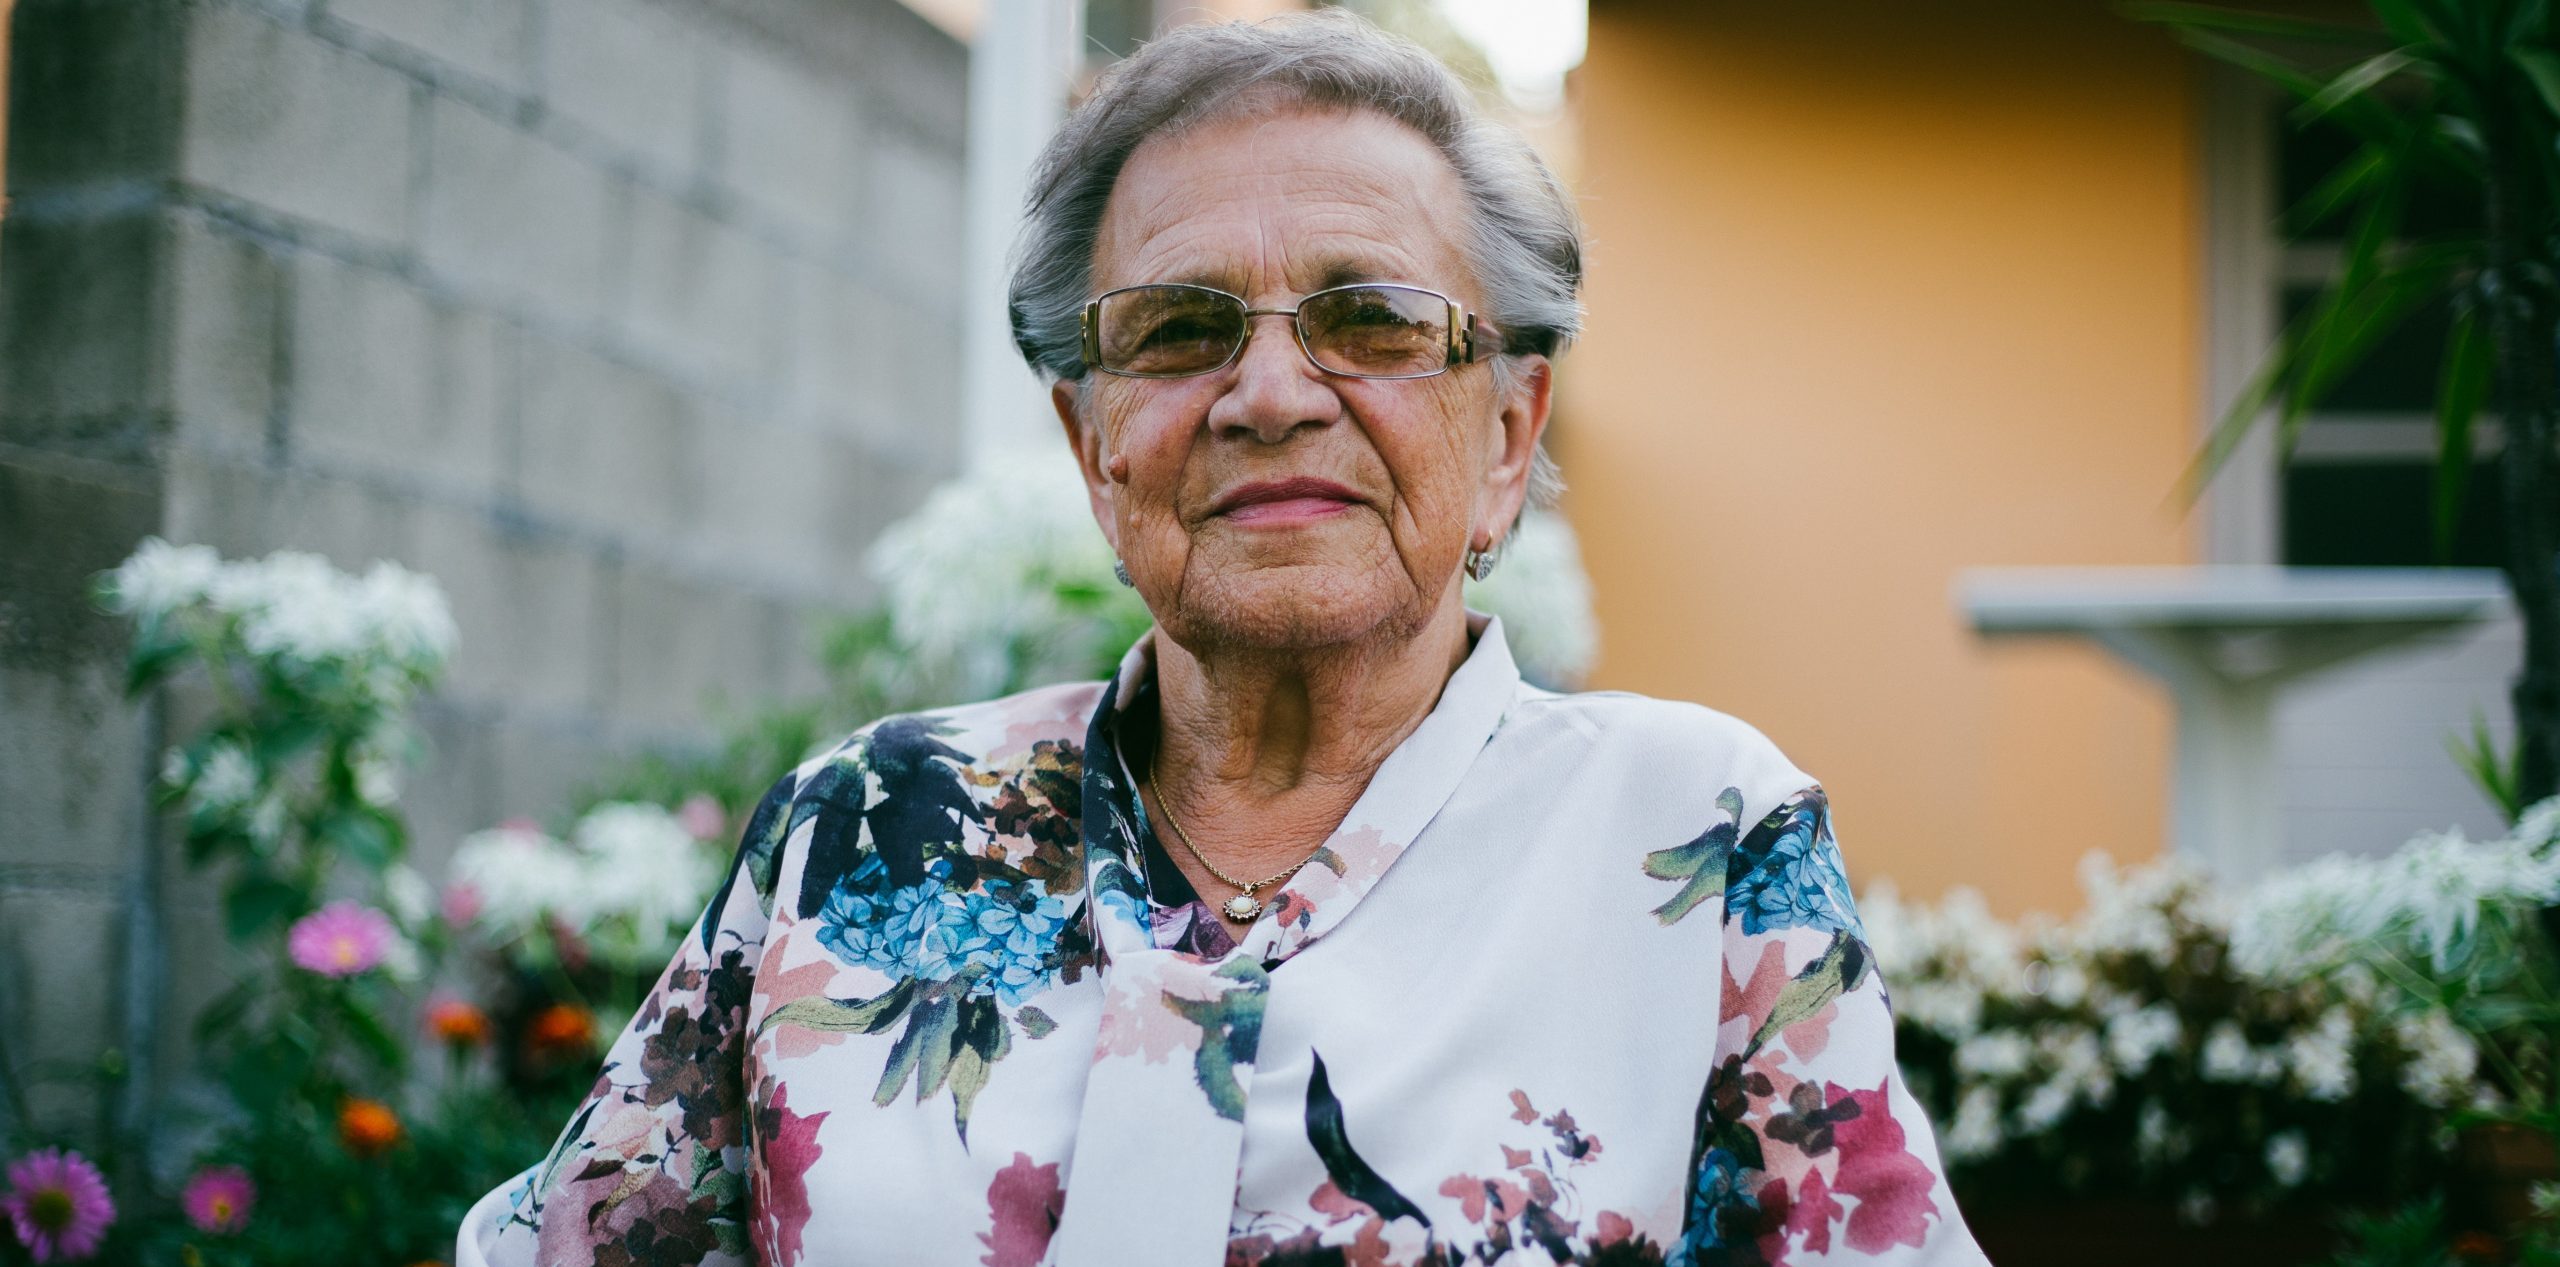 Elderly lady in a flowery top outside